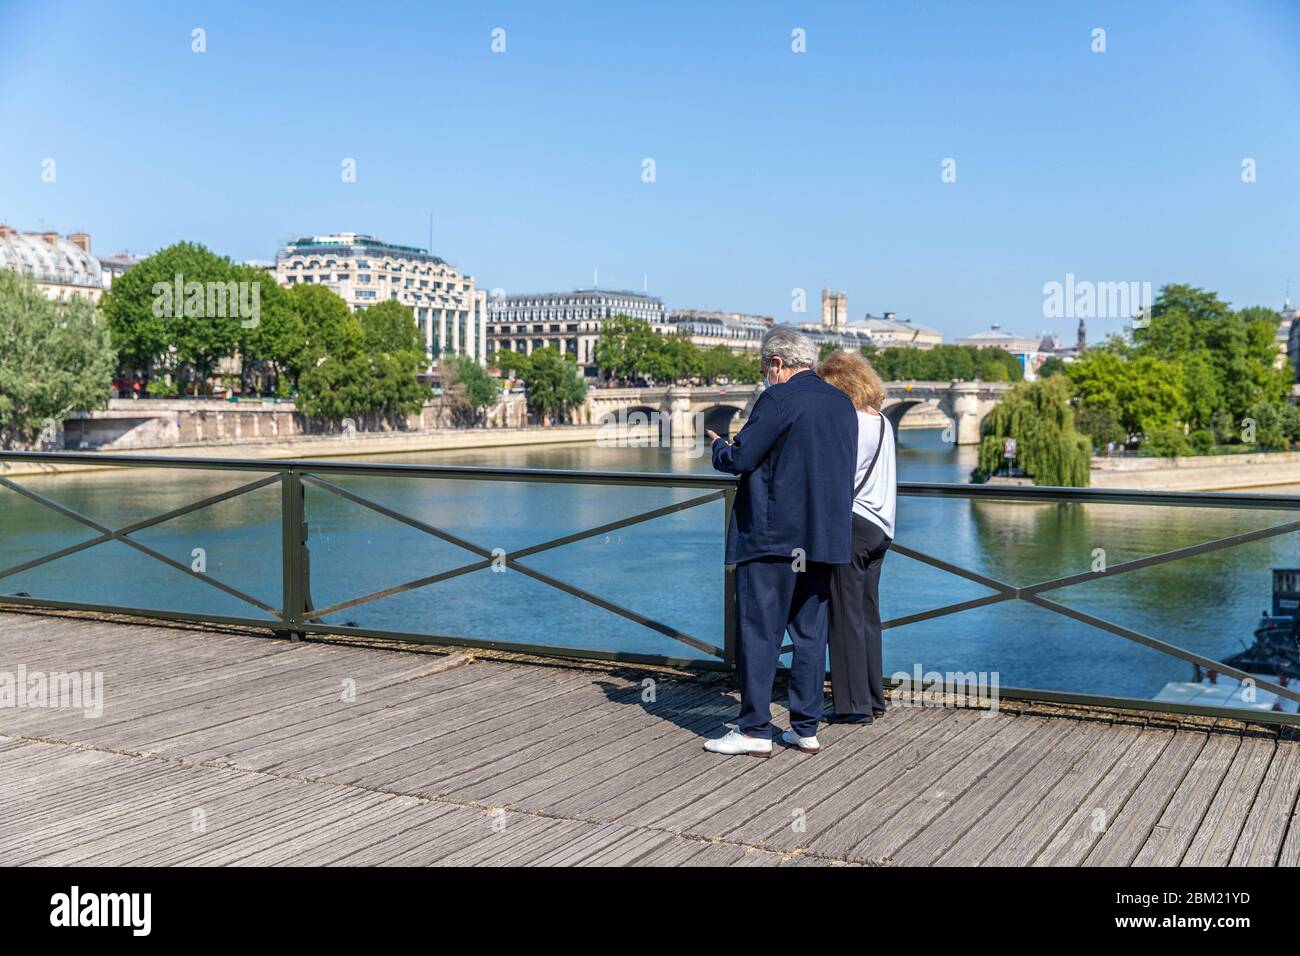 Zwei pariser überqueren die Pont des Arts in Paris während der Sperre Coronavirus Covid-19 Stockfoto